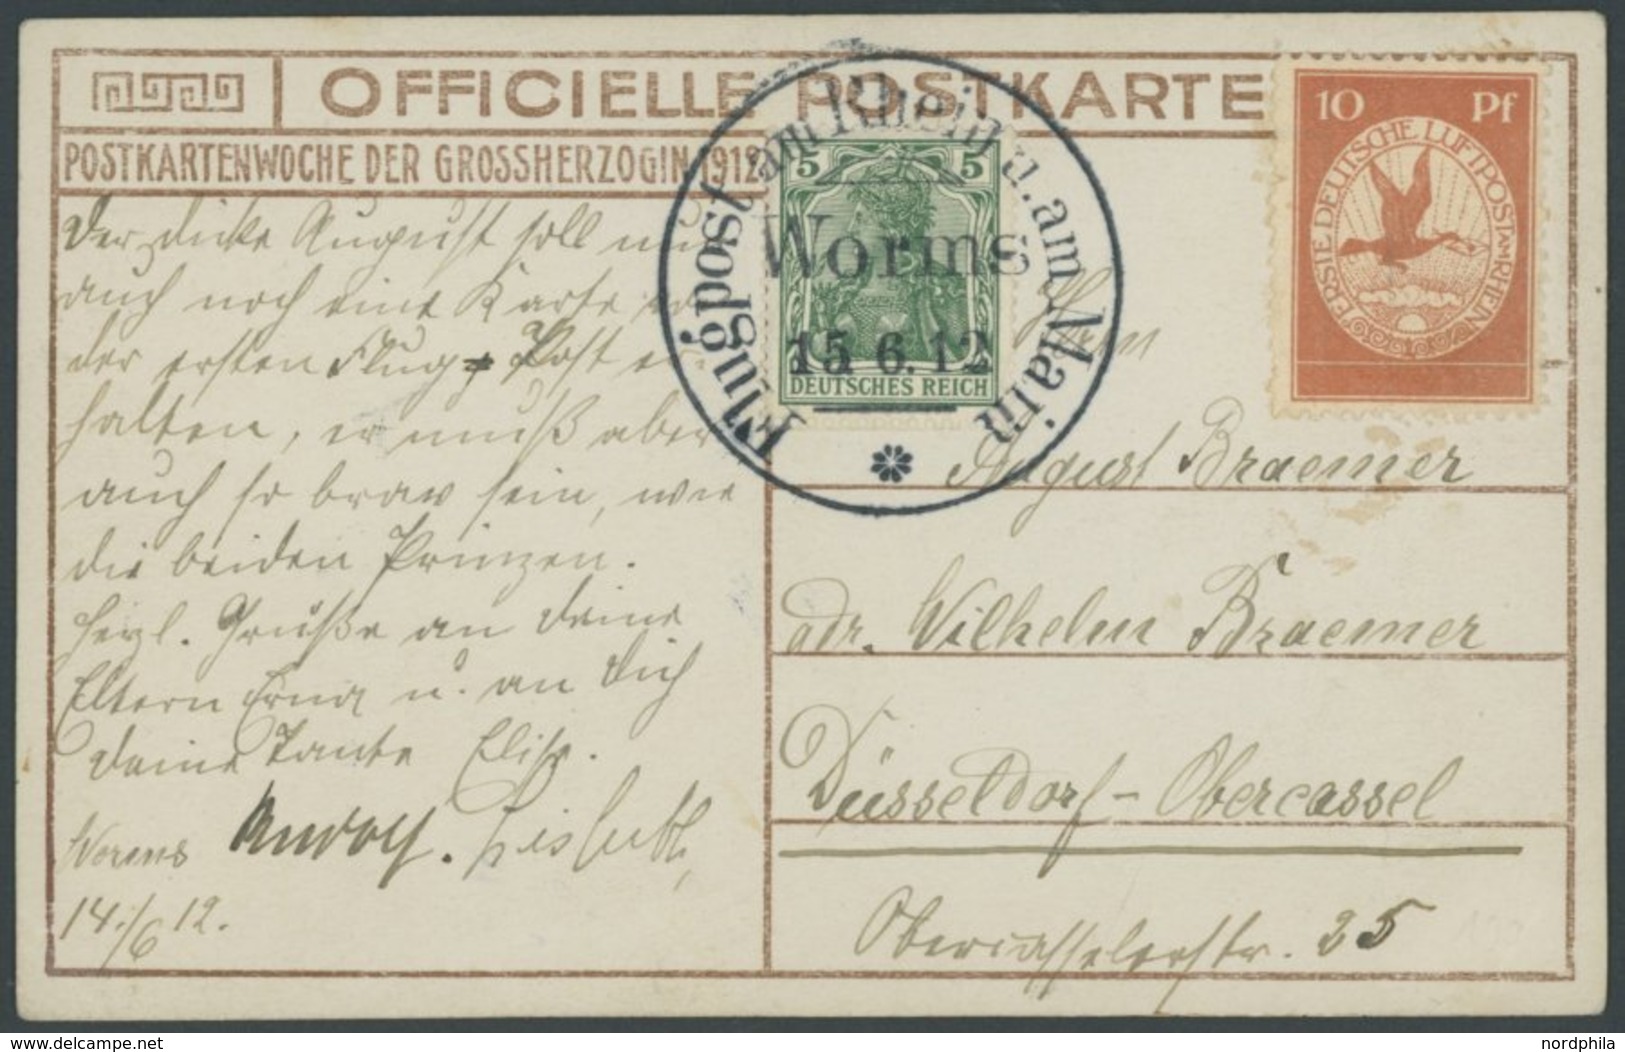 ZEPPELINPOST 10 BRIEF, 1912, 10 Pf. Flp. Am Rhein Und Main Auf Flugpostkarte (Herzogliche Kinder) Mit 5 Pf. Zusatzfranka - Airmail & Zeppelin